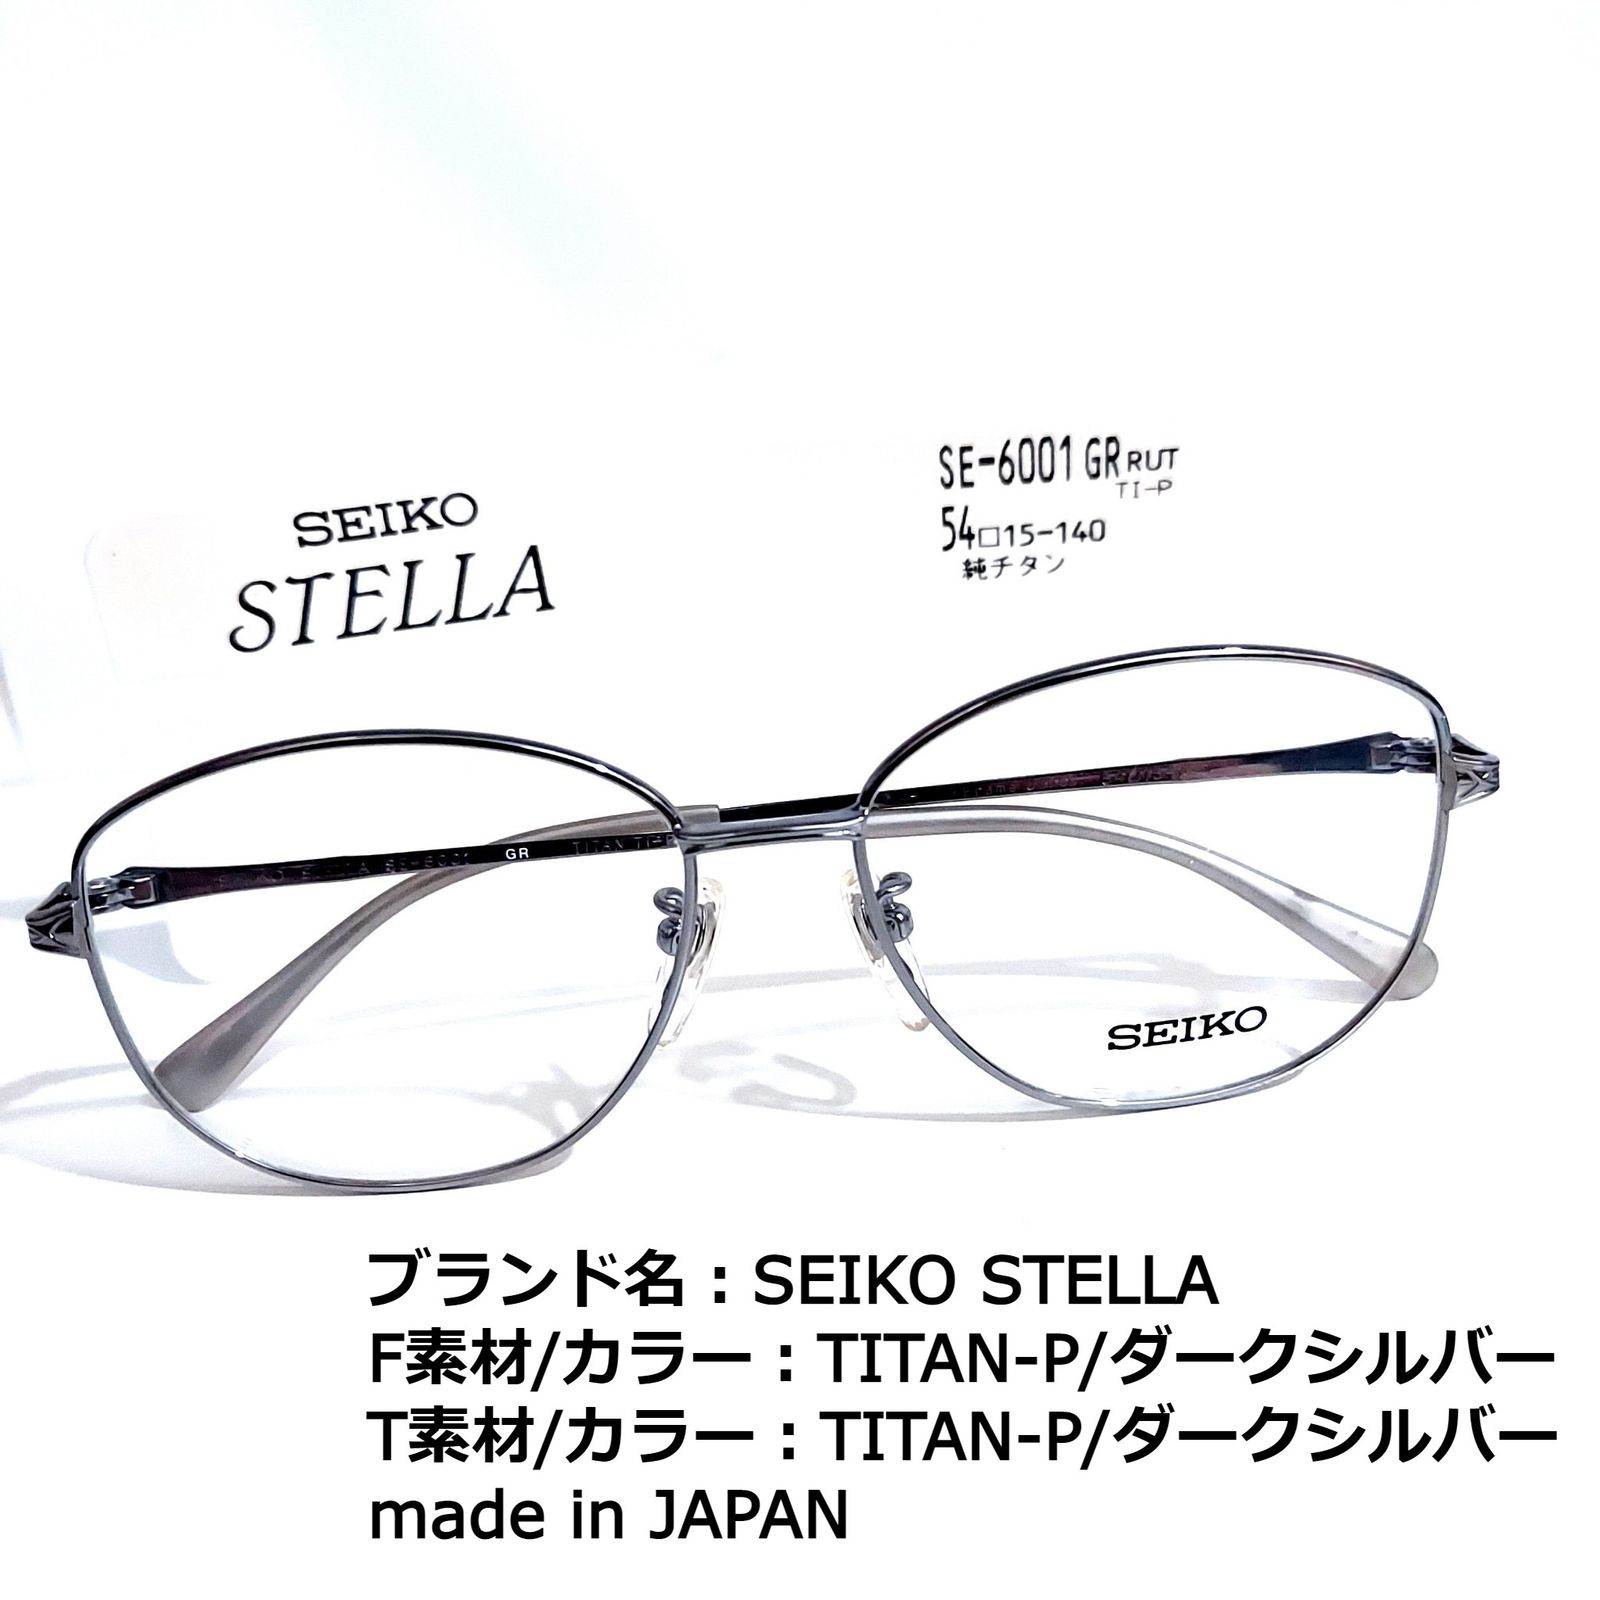 再×14入荷 No.1649-メガネ SEIKO STELLA【フレームのみ価格】 - 通販